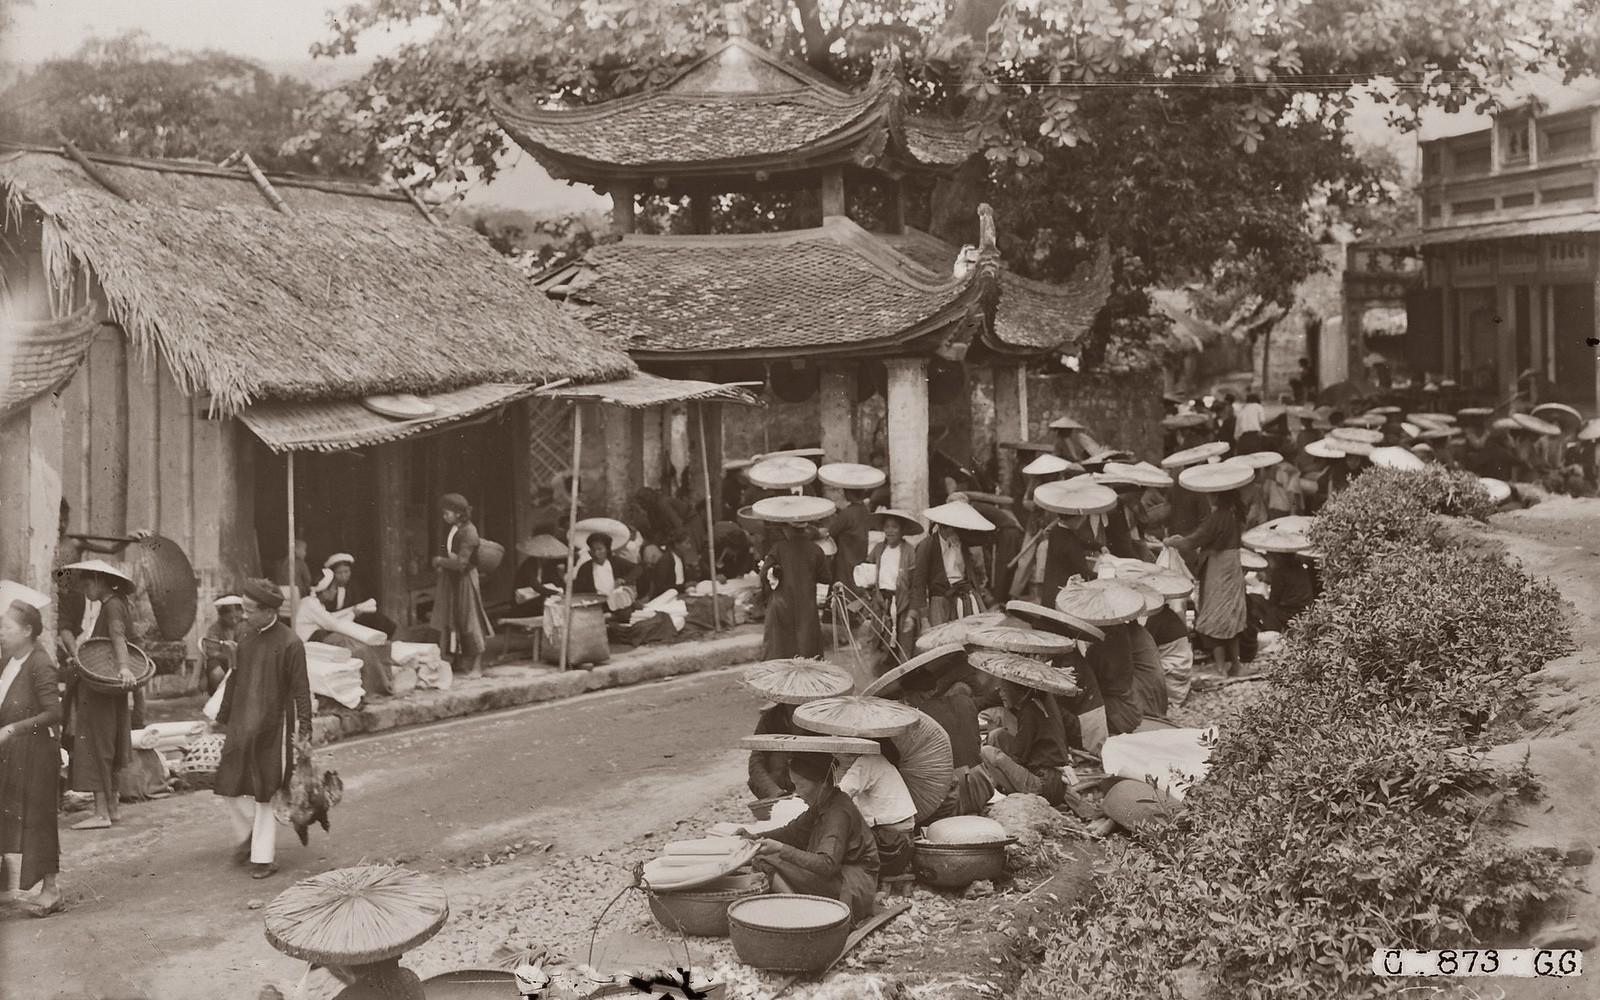 Chợ và phố chợ Hà Nội trăm năm trước qua tư liệu ảnh - 4